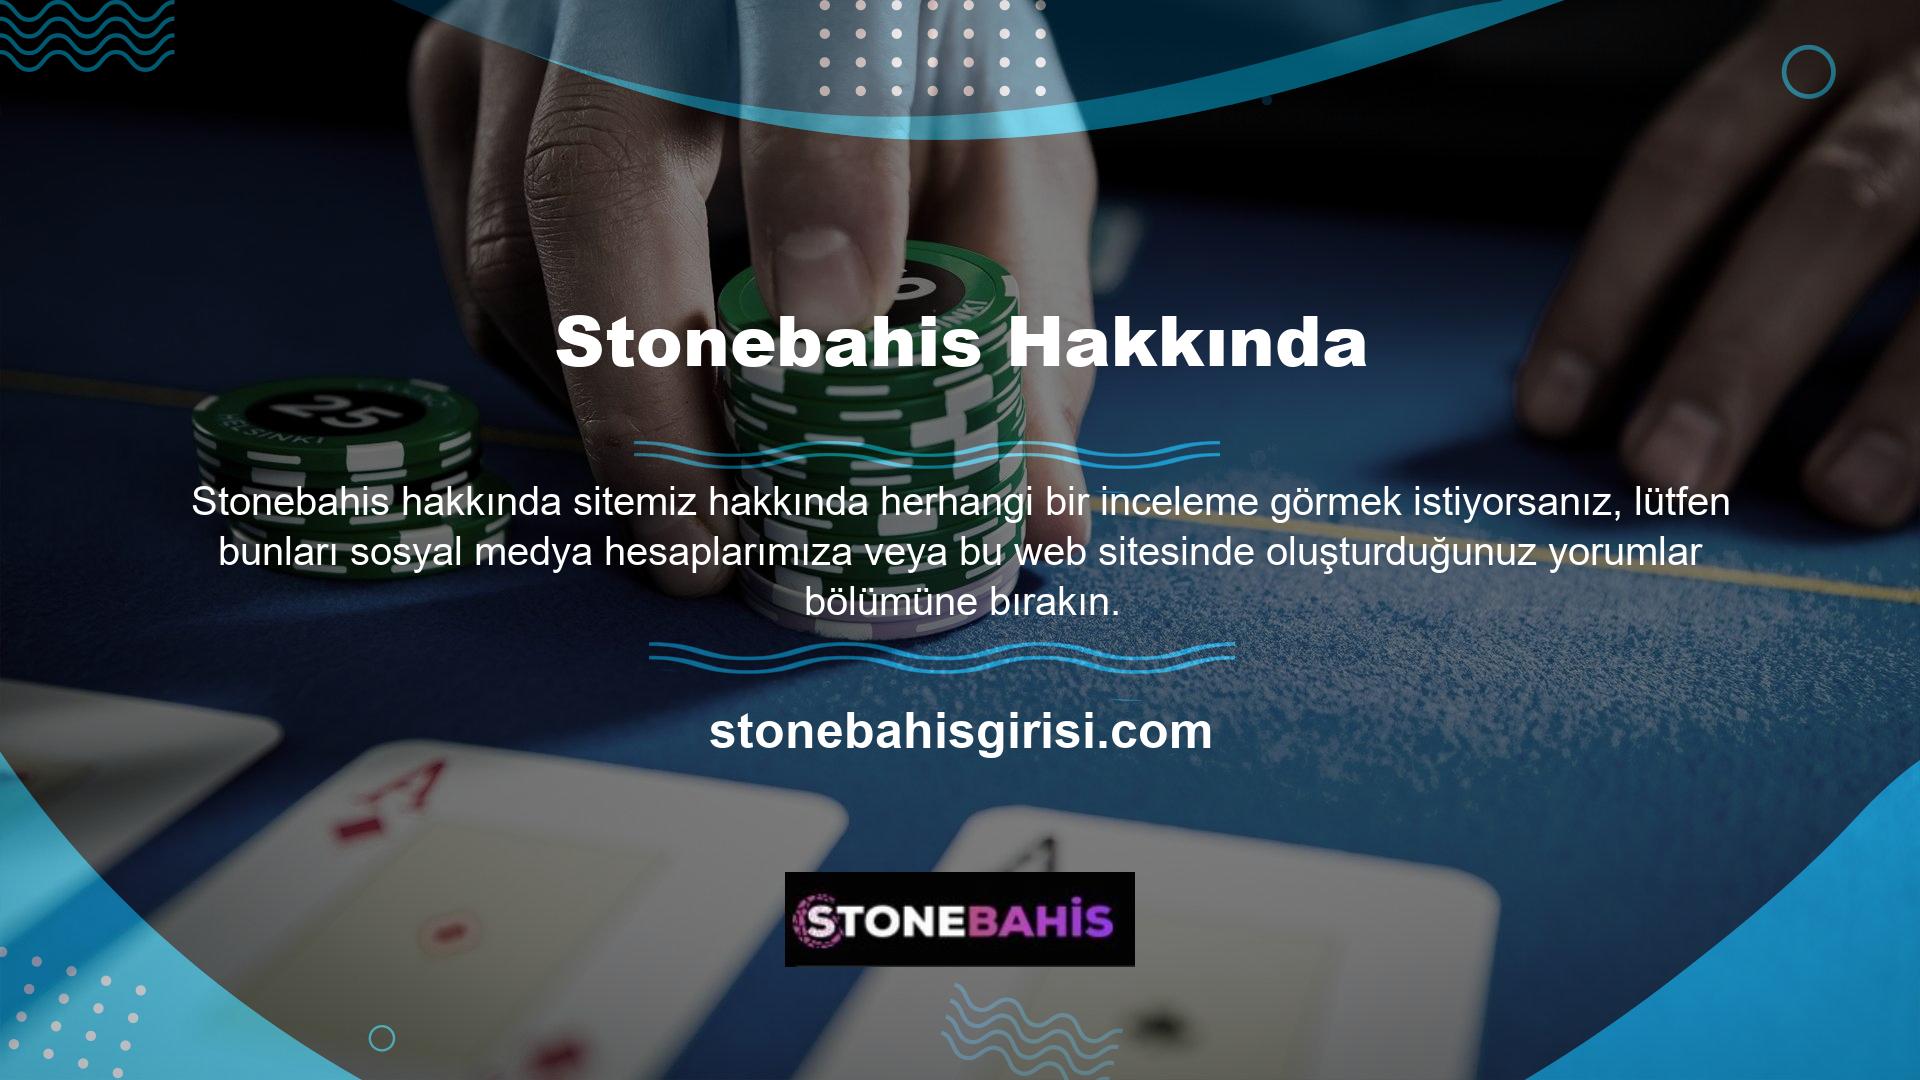 Stonebahis yorumlarına ilişkin detayların öğrenilebileceği en zengin platform Stonebahis Twitter adresidir